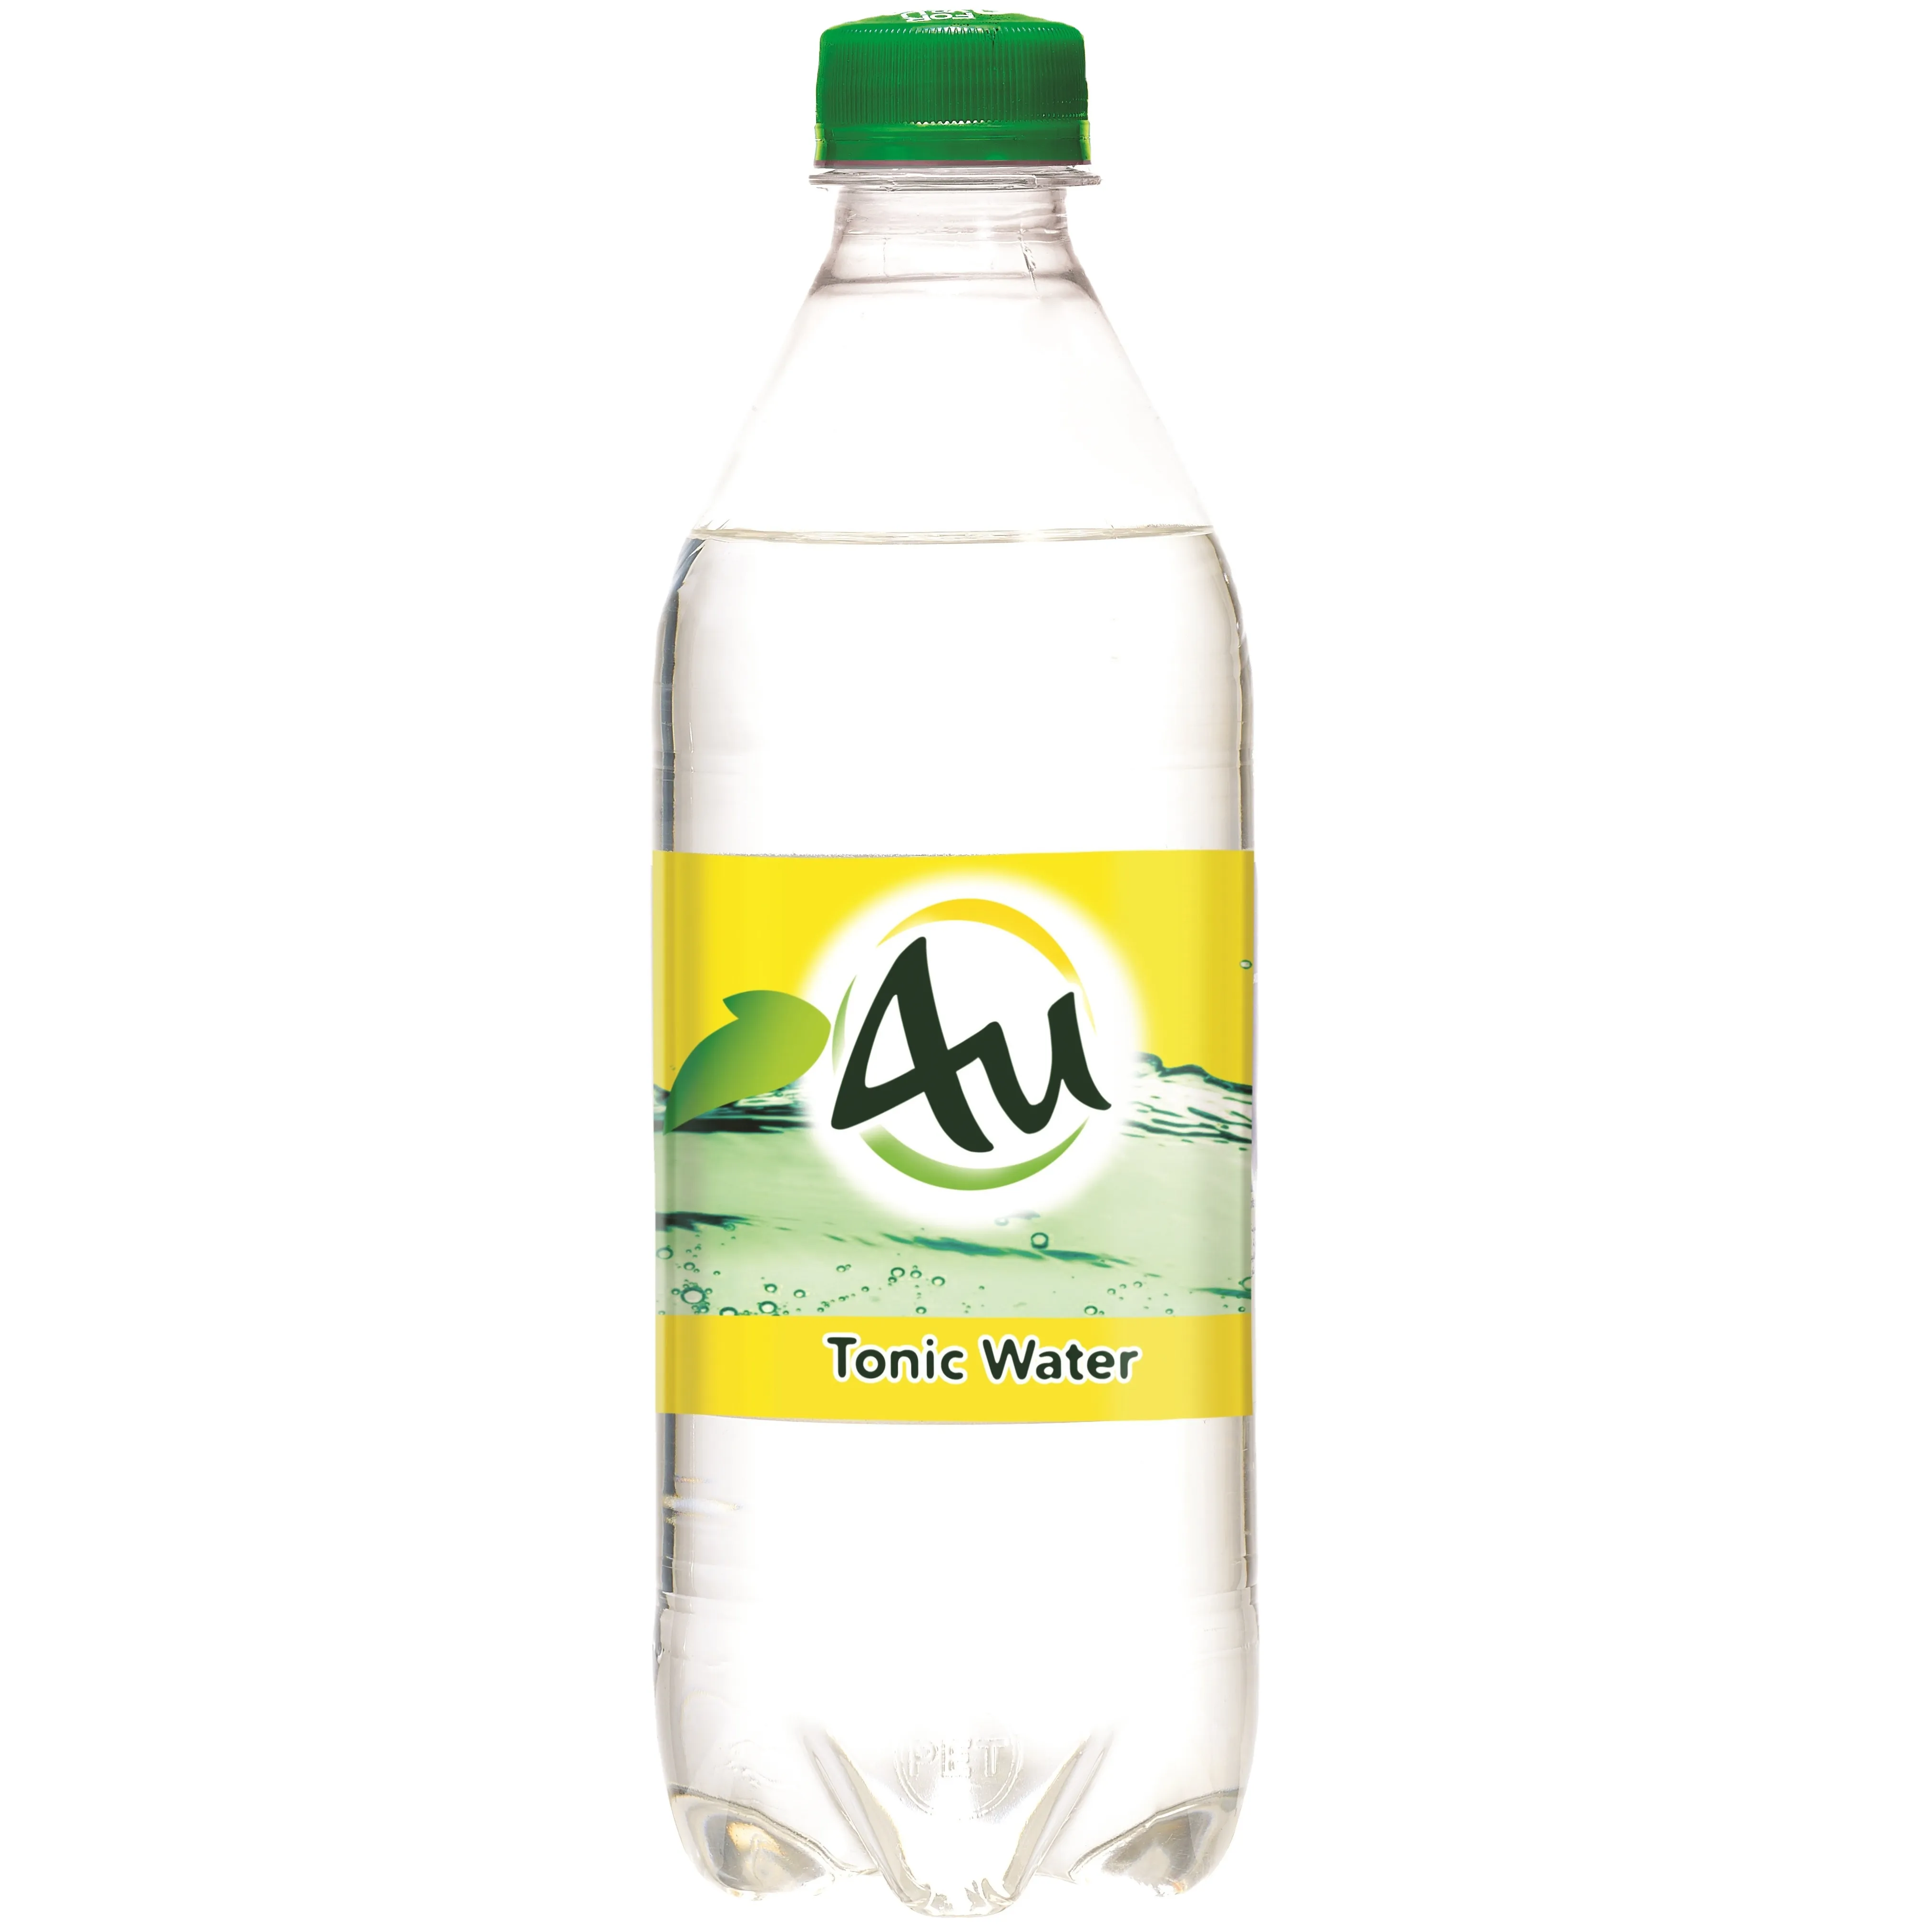 Тонизирующая вода 4U, 500 мл, в холодной бутылке, Сияющие газированные безалкогольные напитки, освежающие свежие напитки